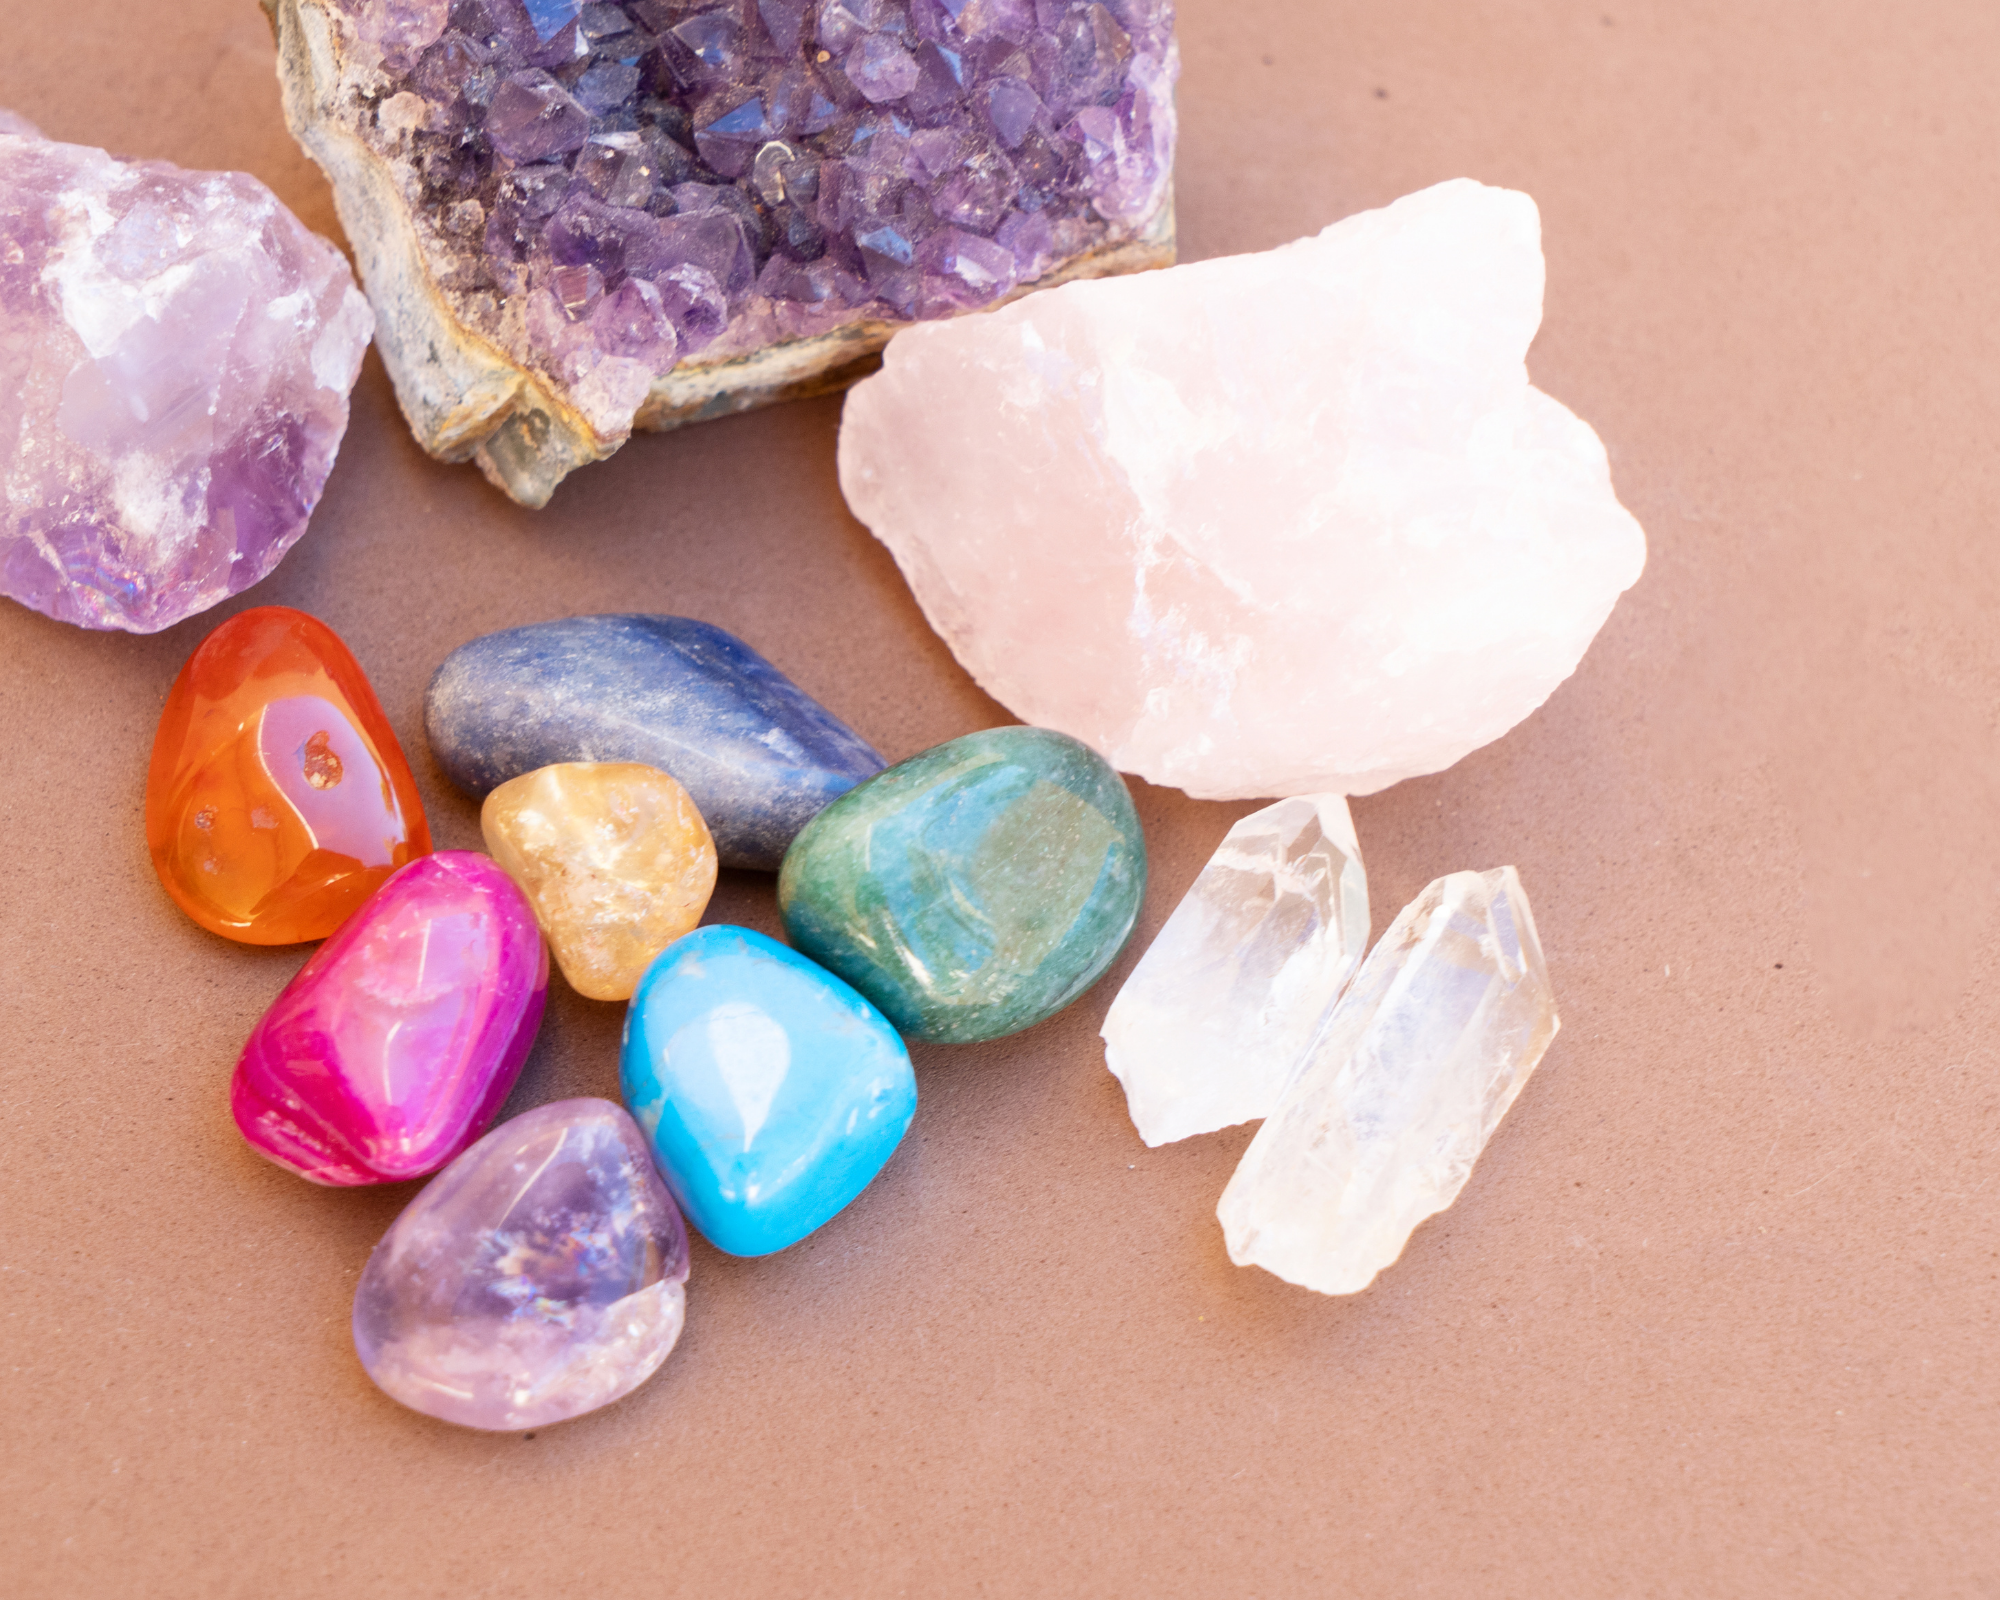 Natural Clear Quartz Healing Stones